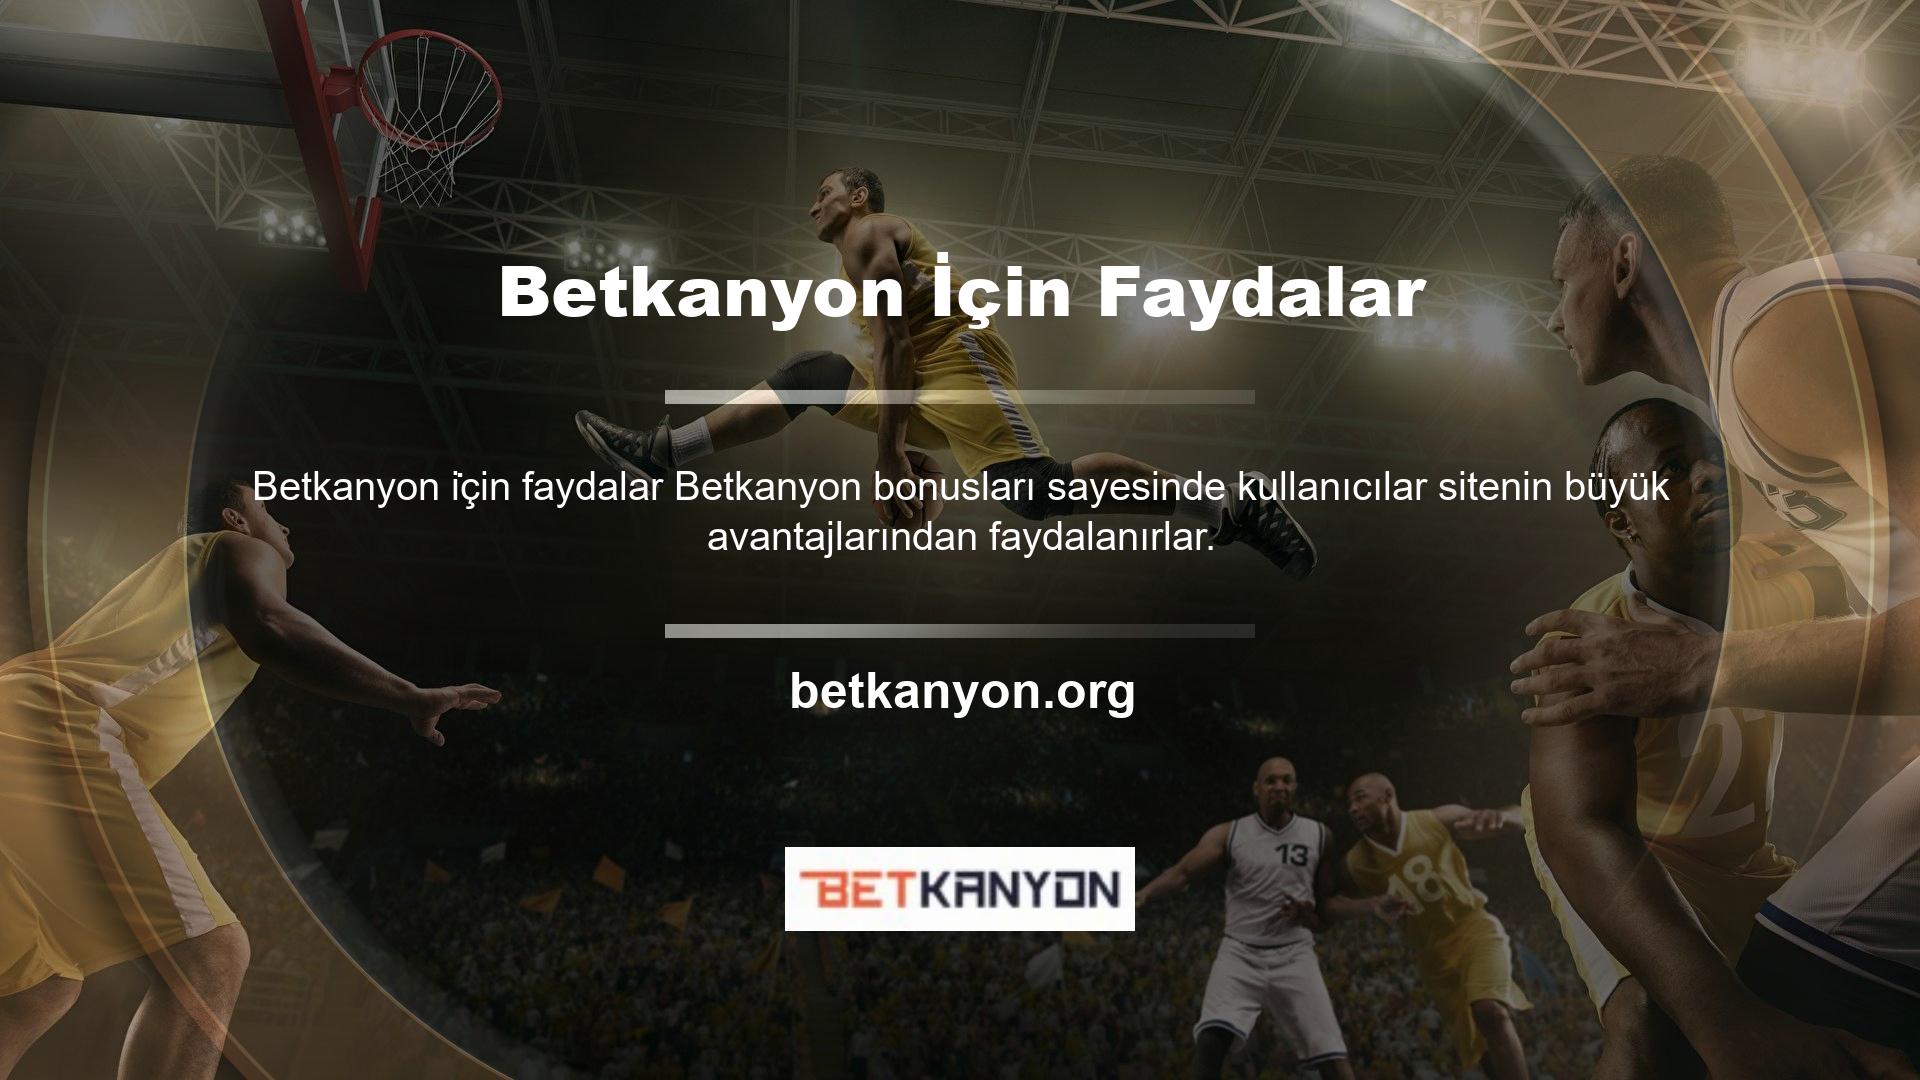 Betkanyon , web sitelerinin kullanıcılarına sunduğu kampanyalardan biridir